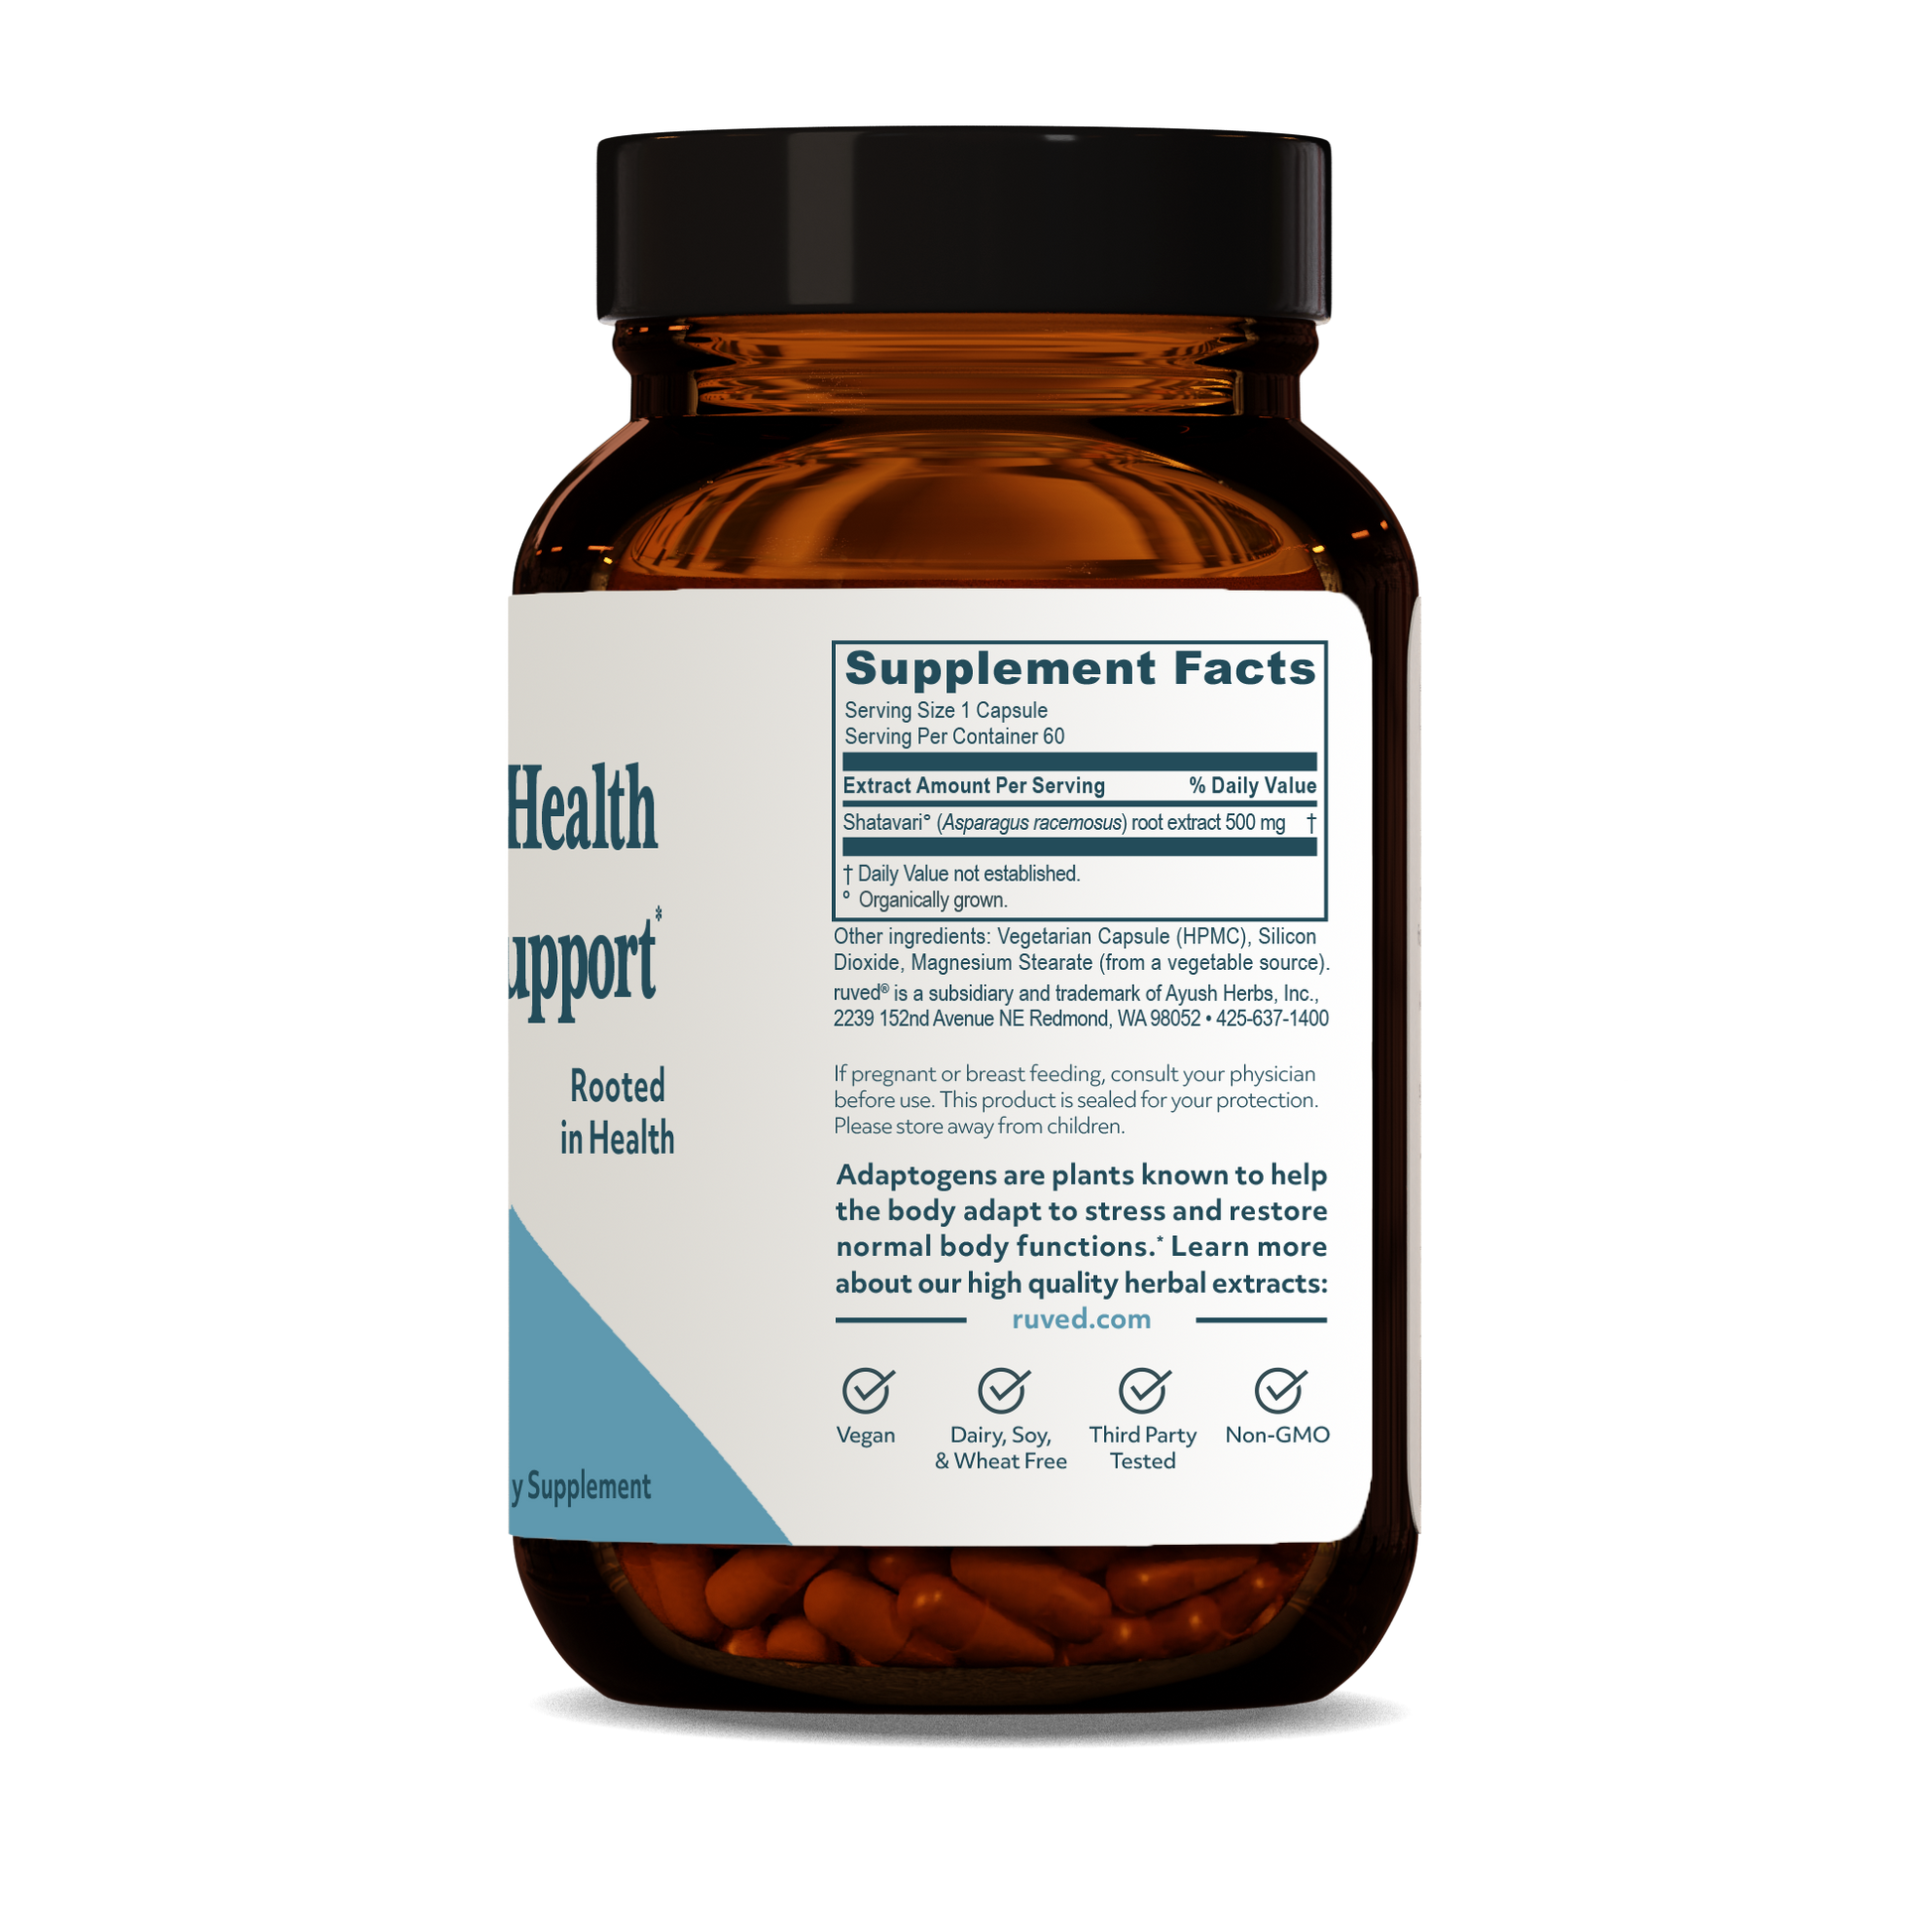 Shatavari Capsules Supplement Facts - Organic Shatavari Root Extract, 60 Vegetarian Capsules, Herbal Supplement for Women's Health and Hormonal Balance.